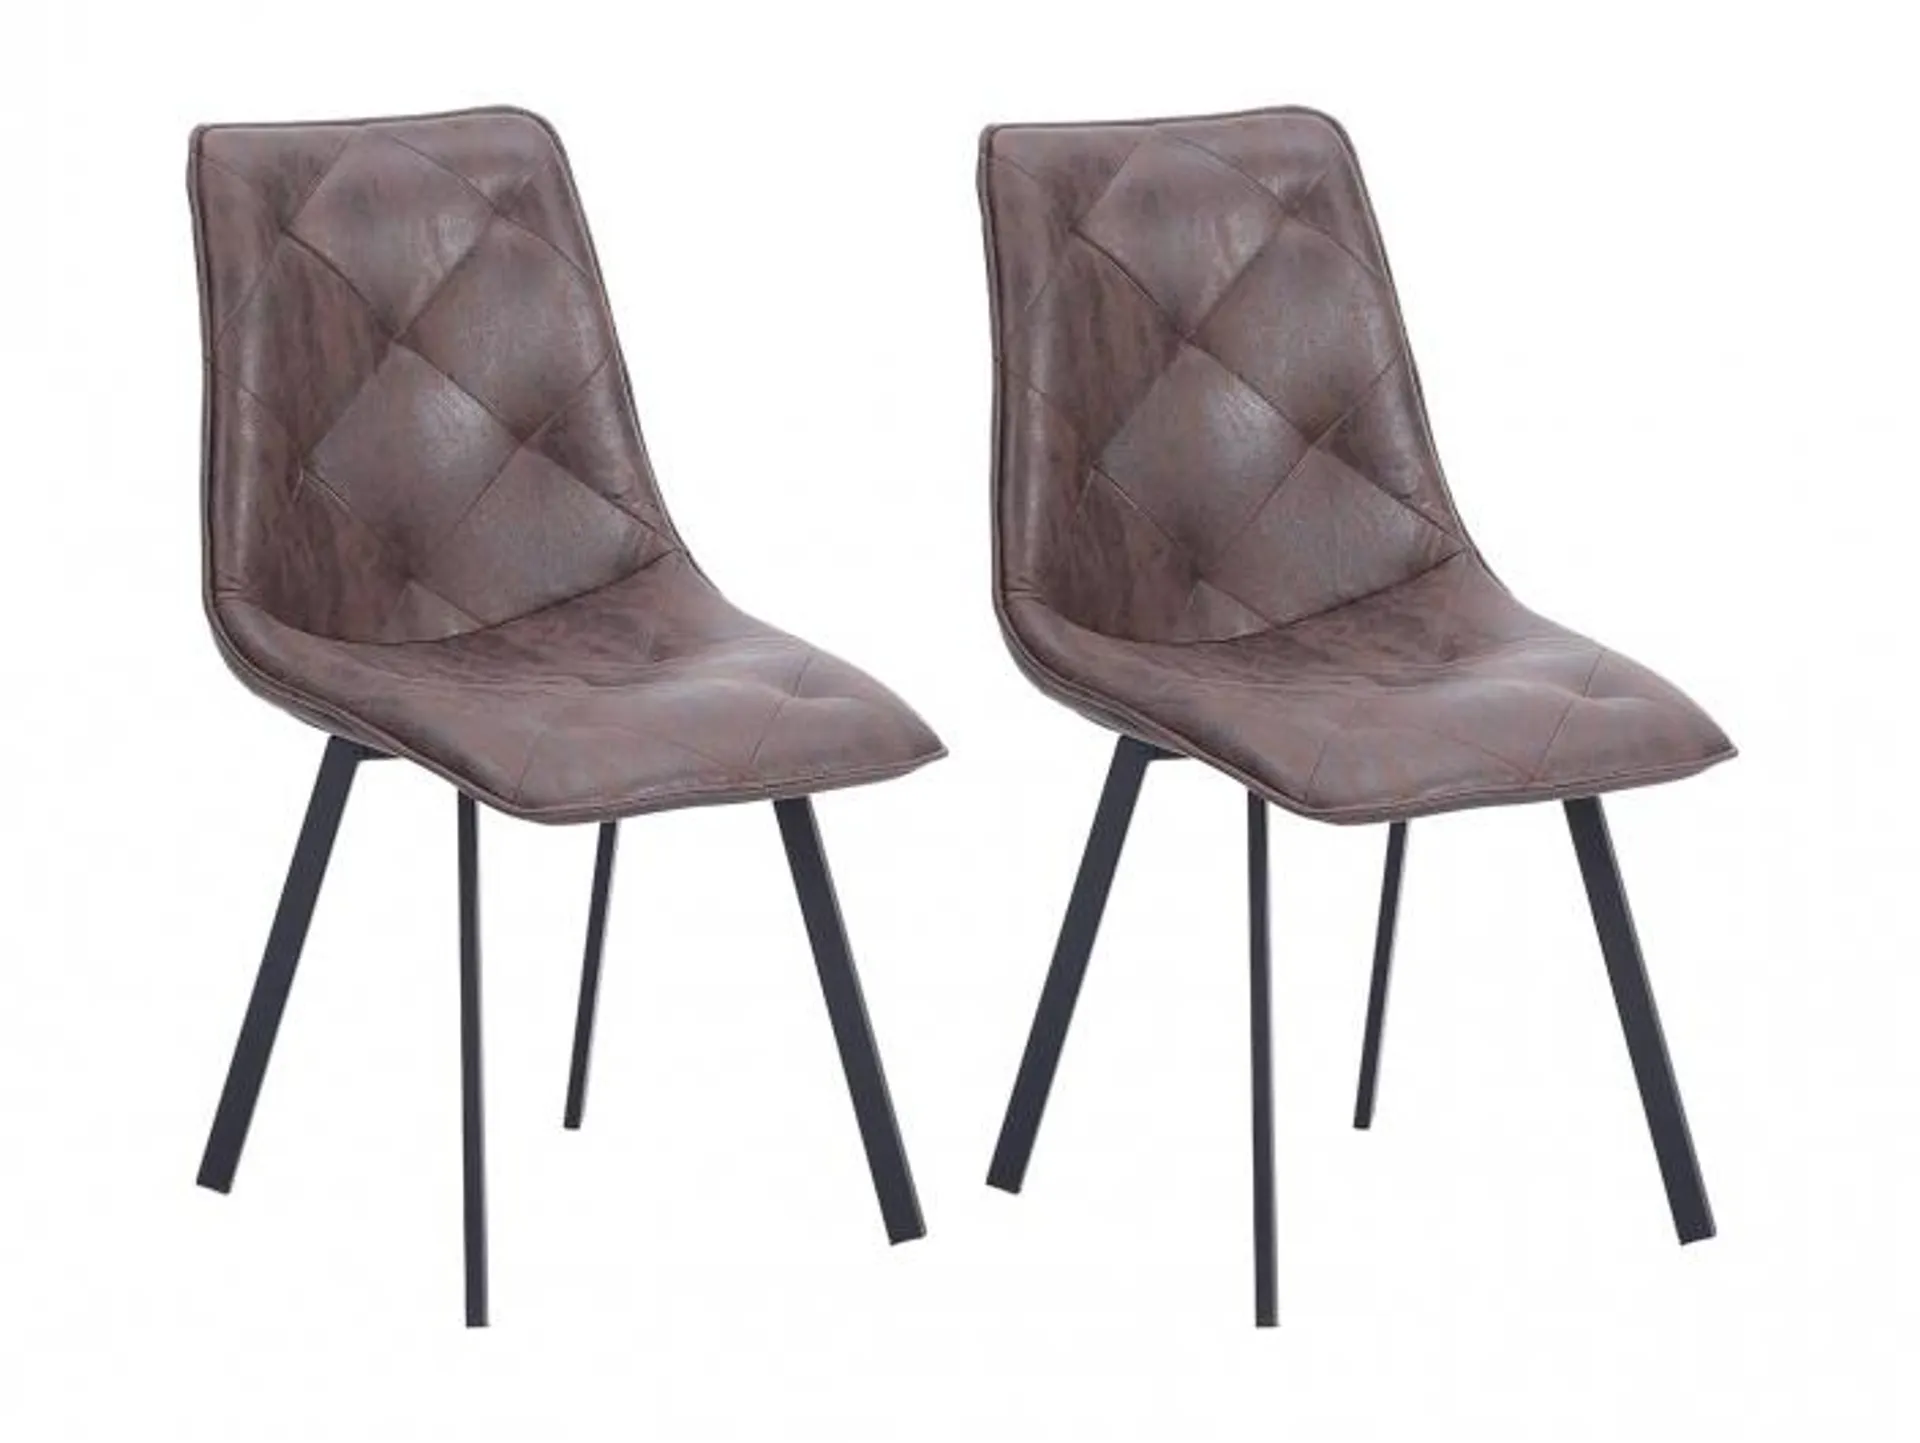 Pack 2 sillas tapizadas con costuras decorativas color chocolate